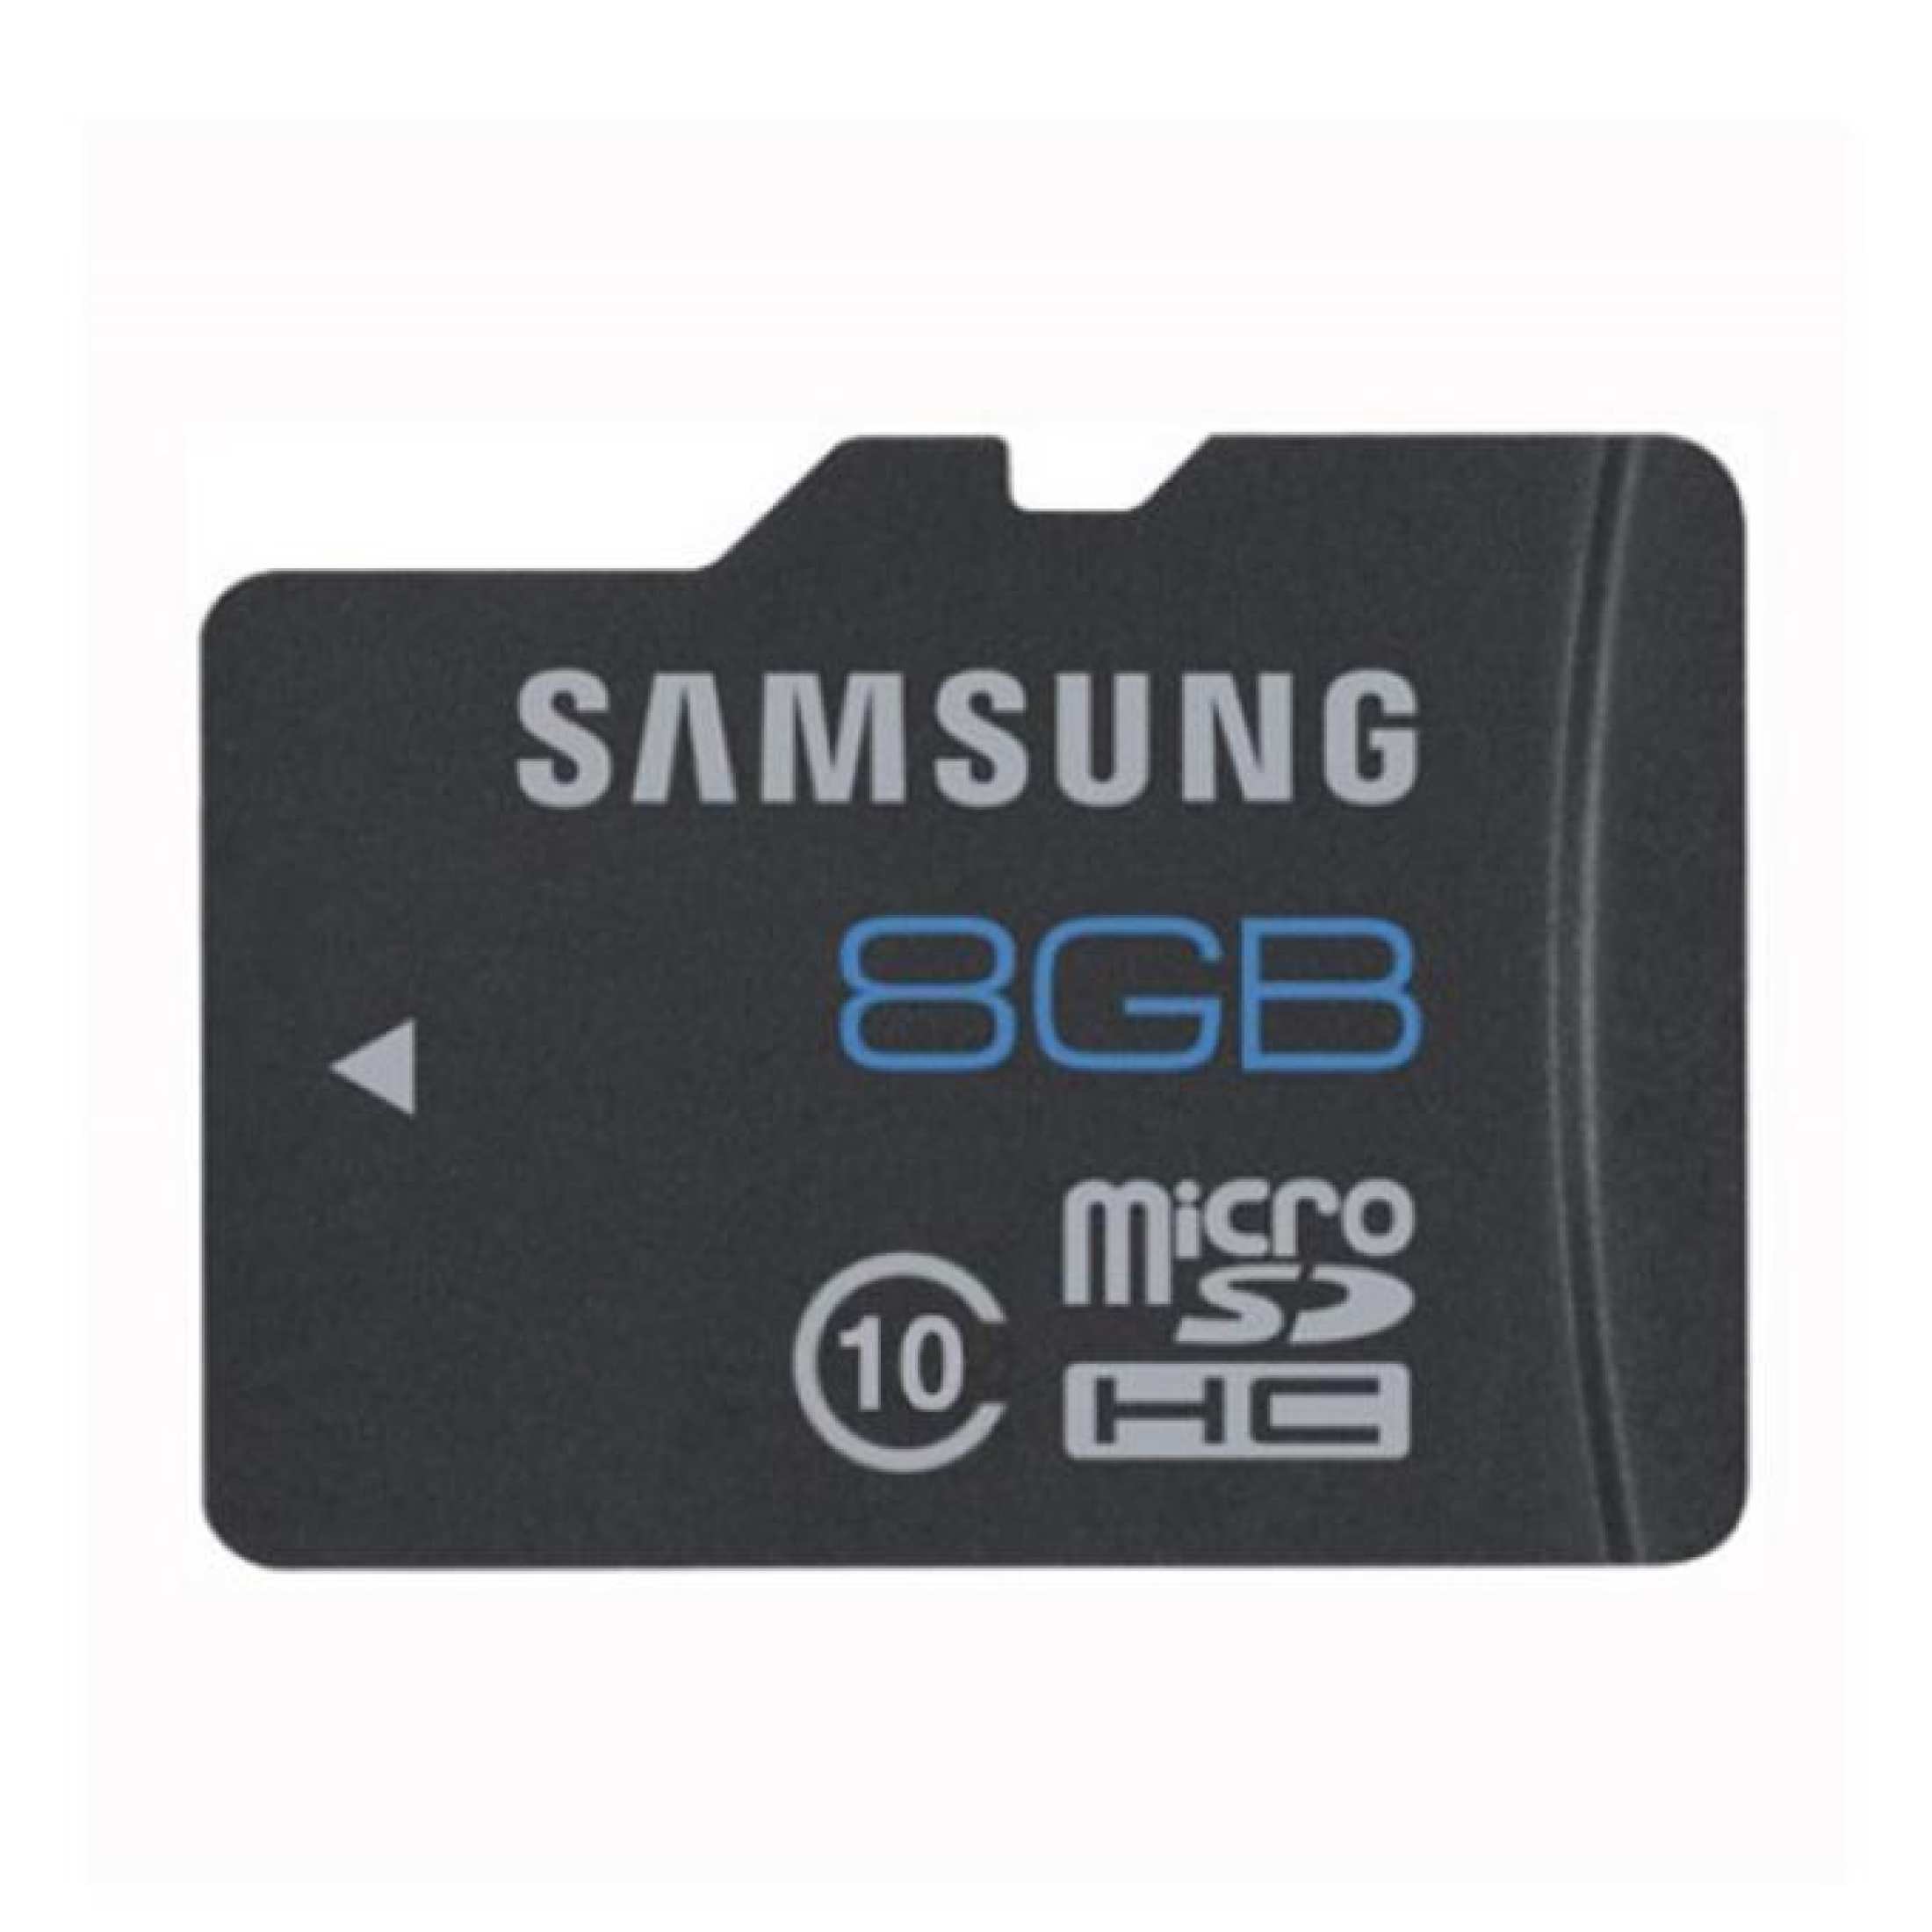 Дешевый микро. Флешка самсунг 32 ГБ микро СД. Флешка 64 ГБ микро SD. Микро СД самсунг 16 ГБ. Карта памяти Samsung 16 GB.